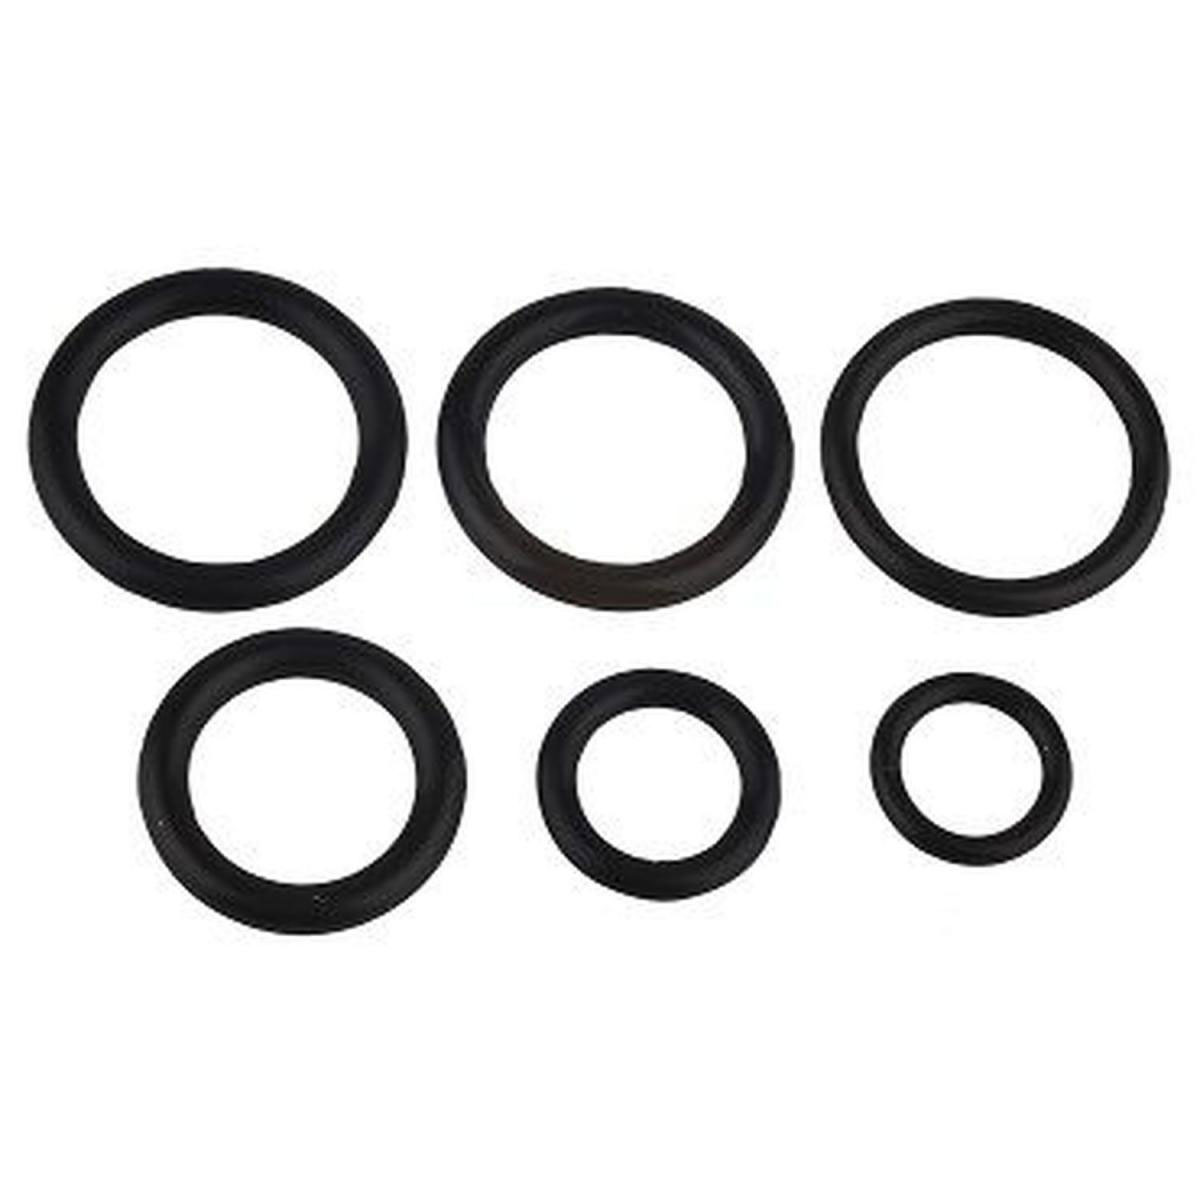 O-Ring-Sortiment-Box L, deutsche Norm kaufen - im Haberkorn Online